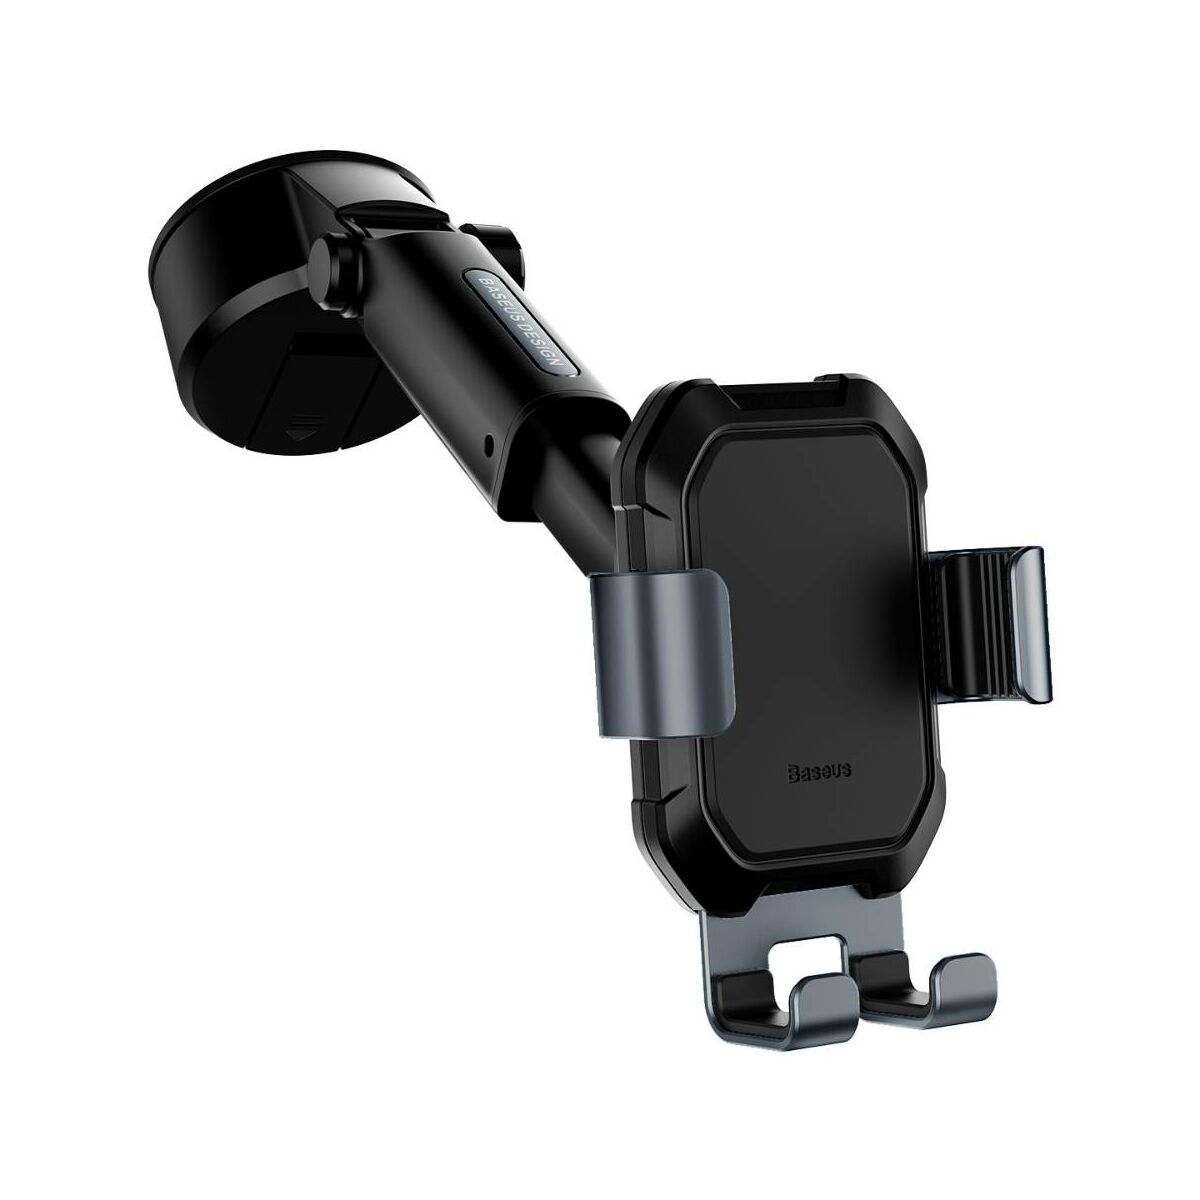 Baseus autós telefontartó, Tank Gravity, műszerfalra vagy szélvédőre helyezhető, fekete (SUYL-TK01)